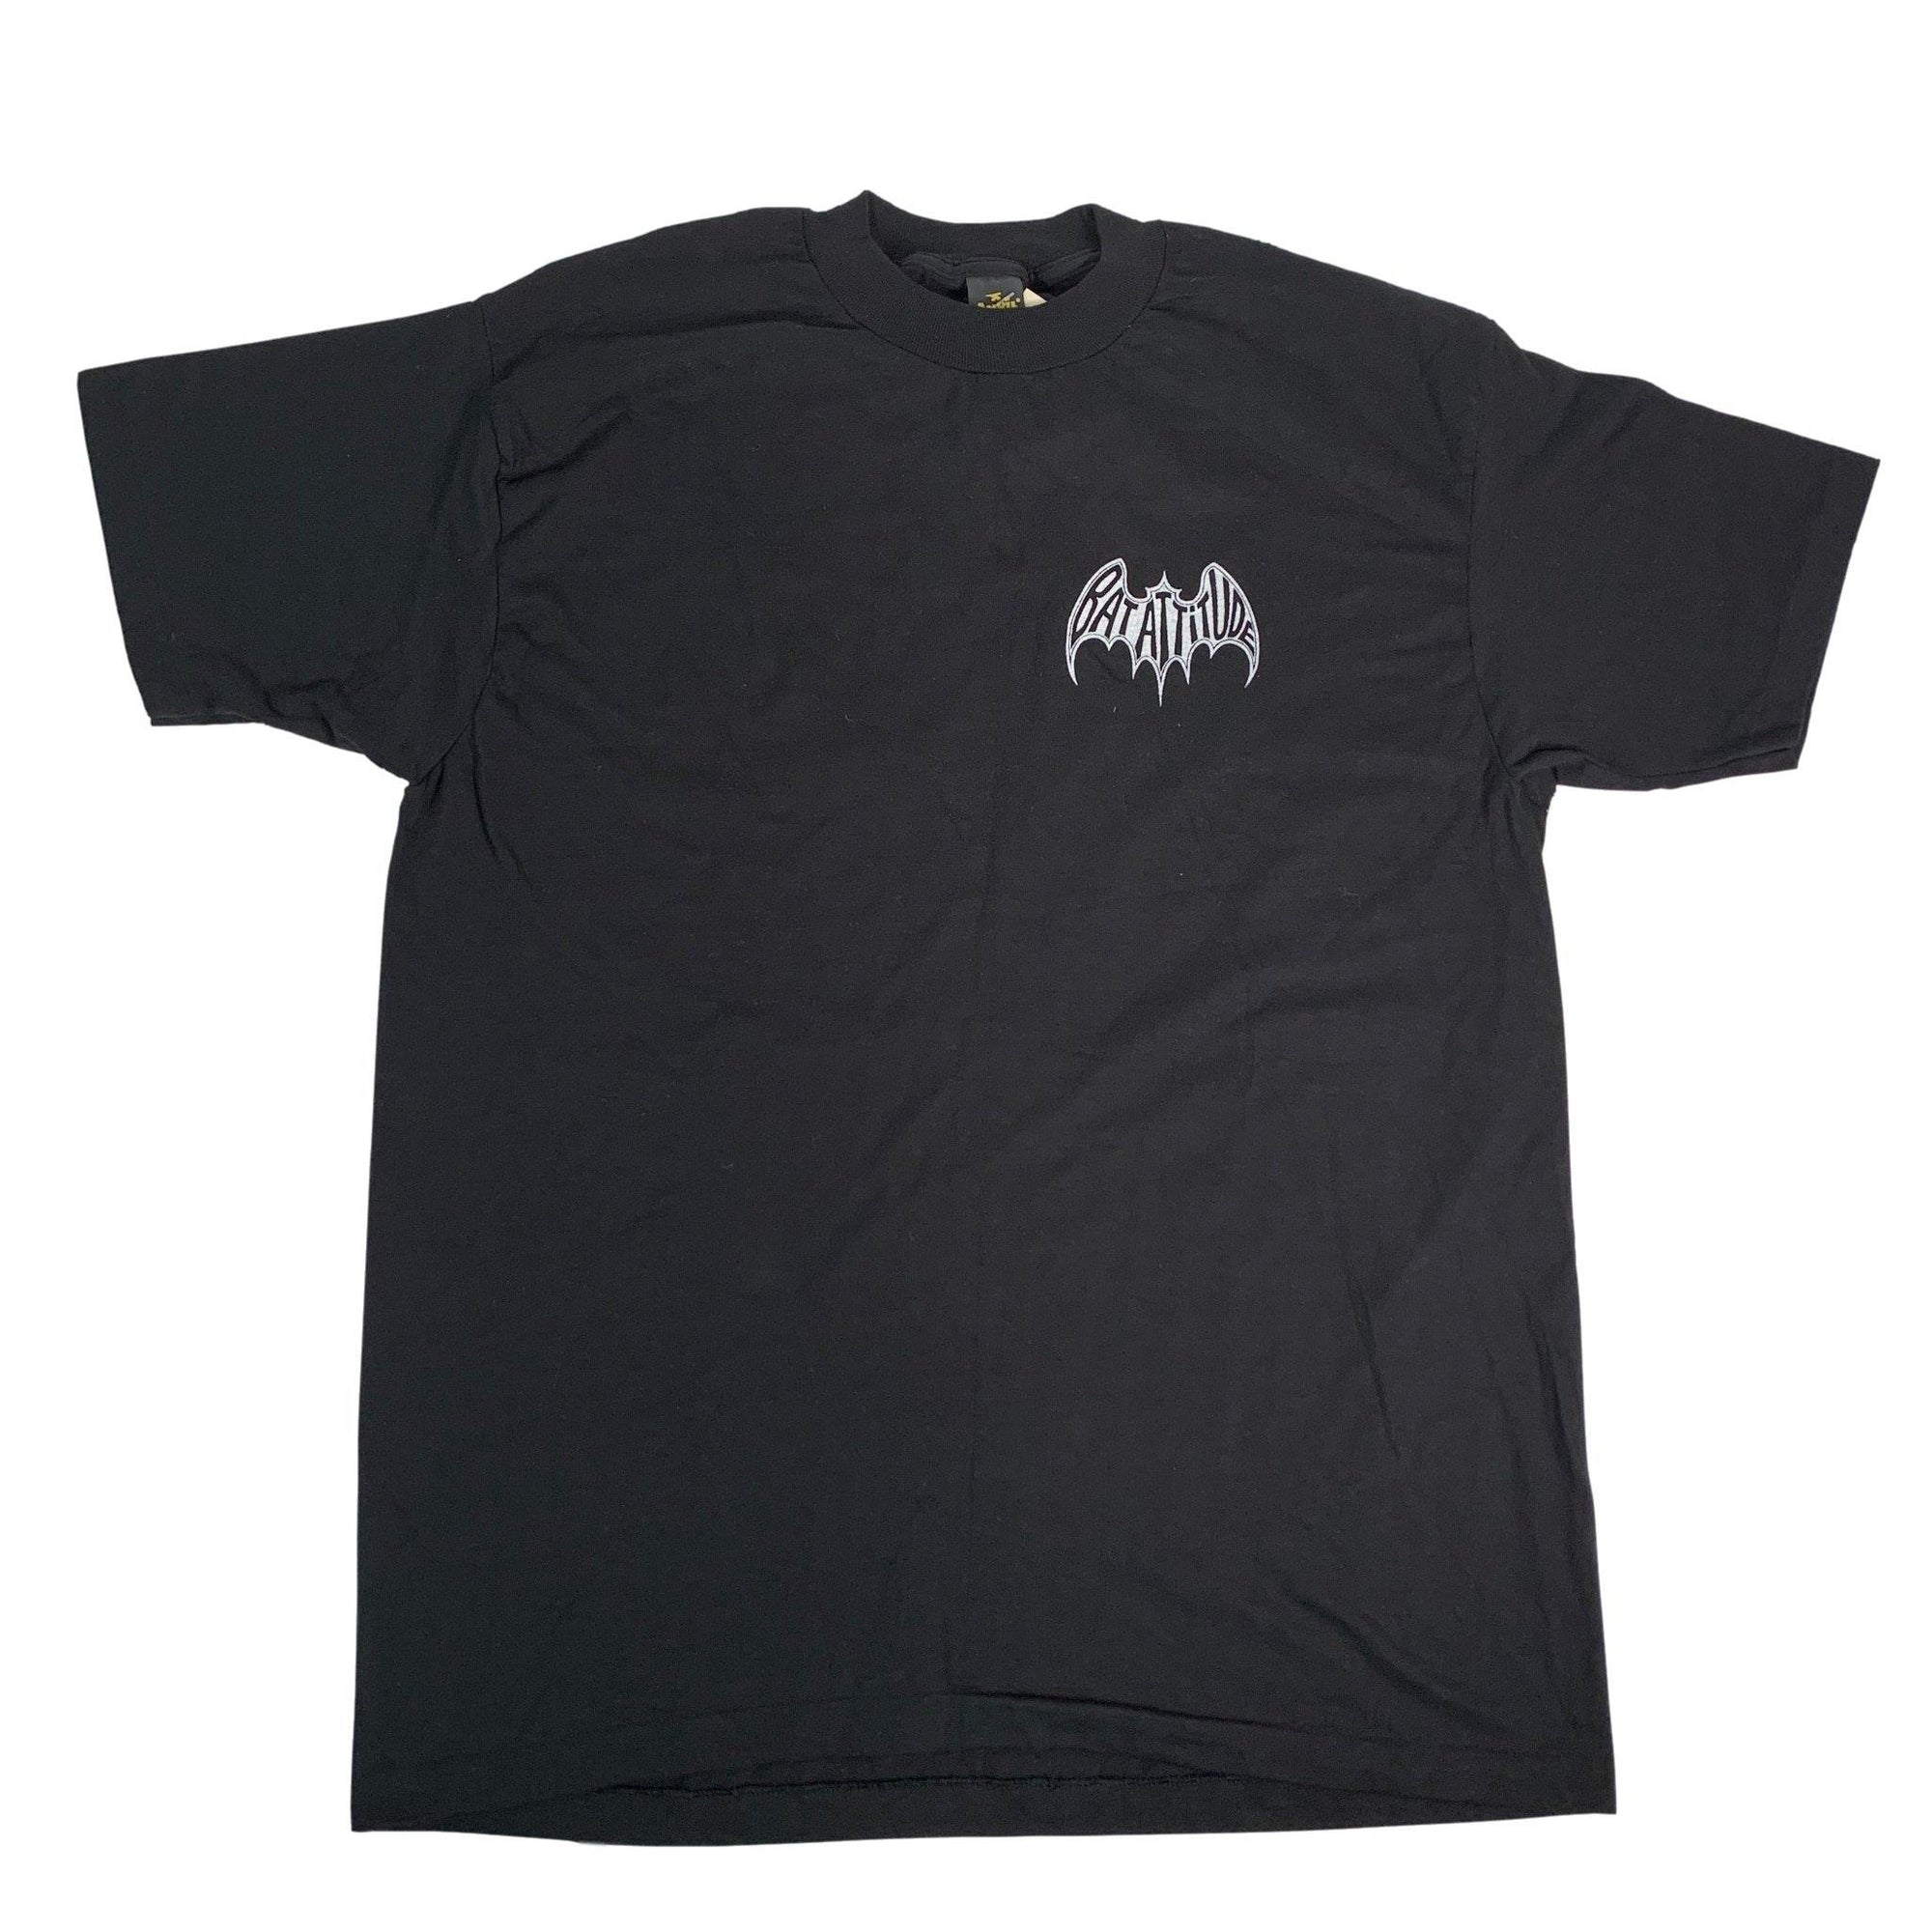 Vintage Batman "Bat Attitude" T-Shirt - jointcustodydc